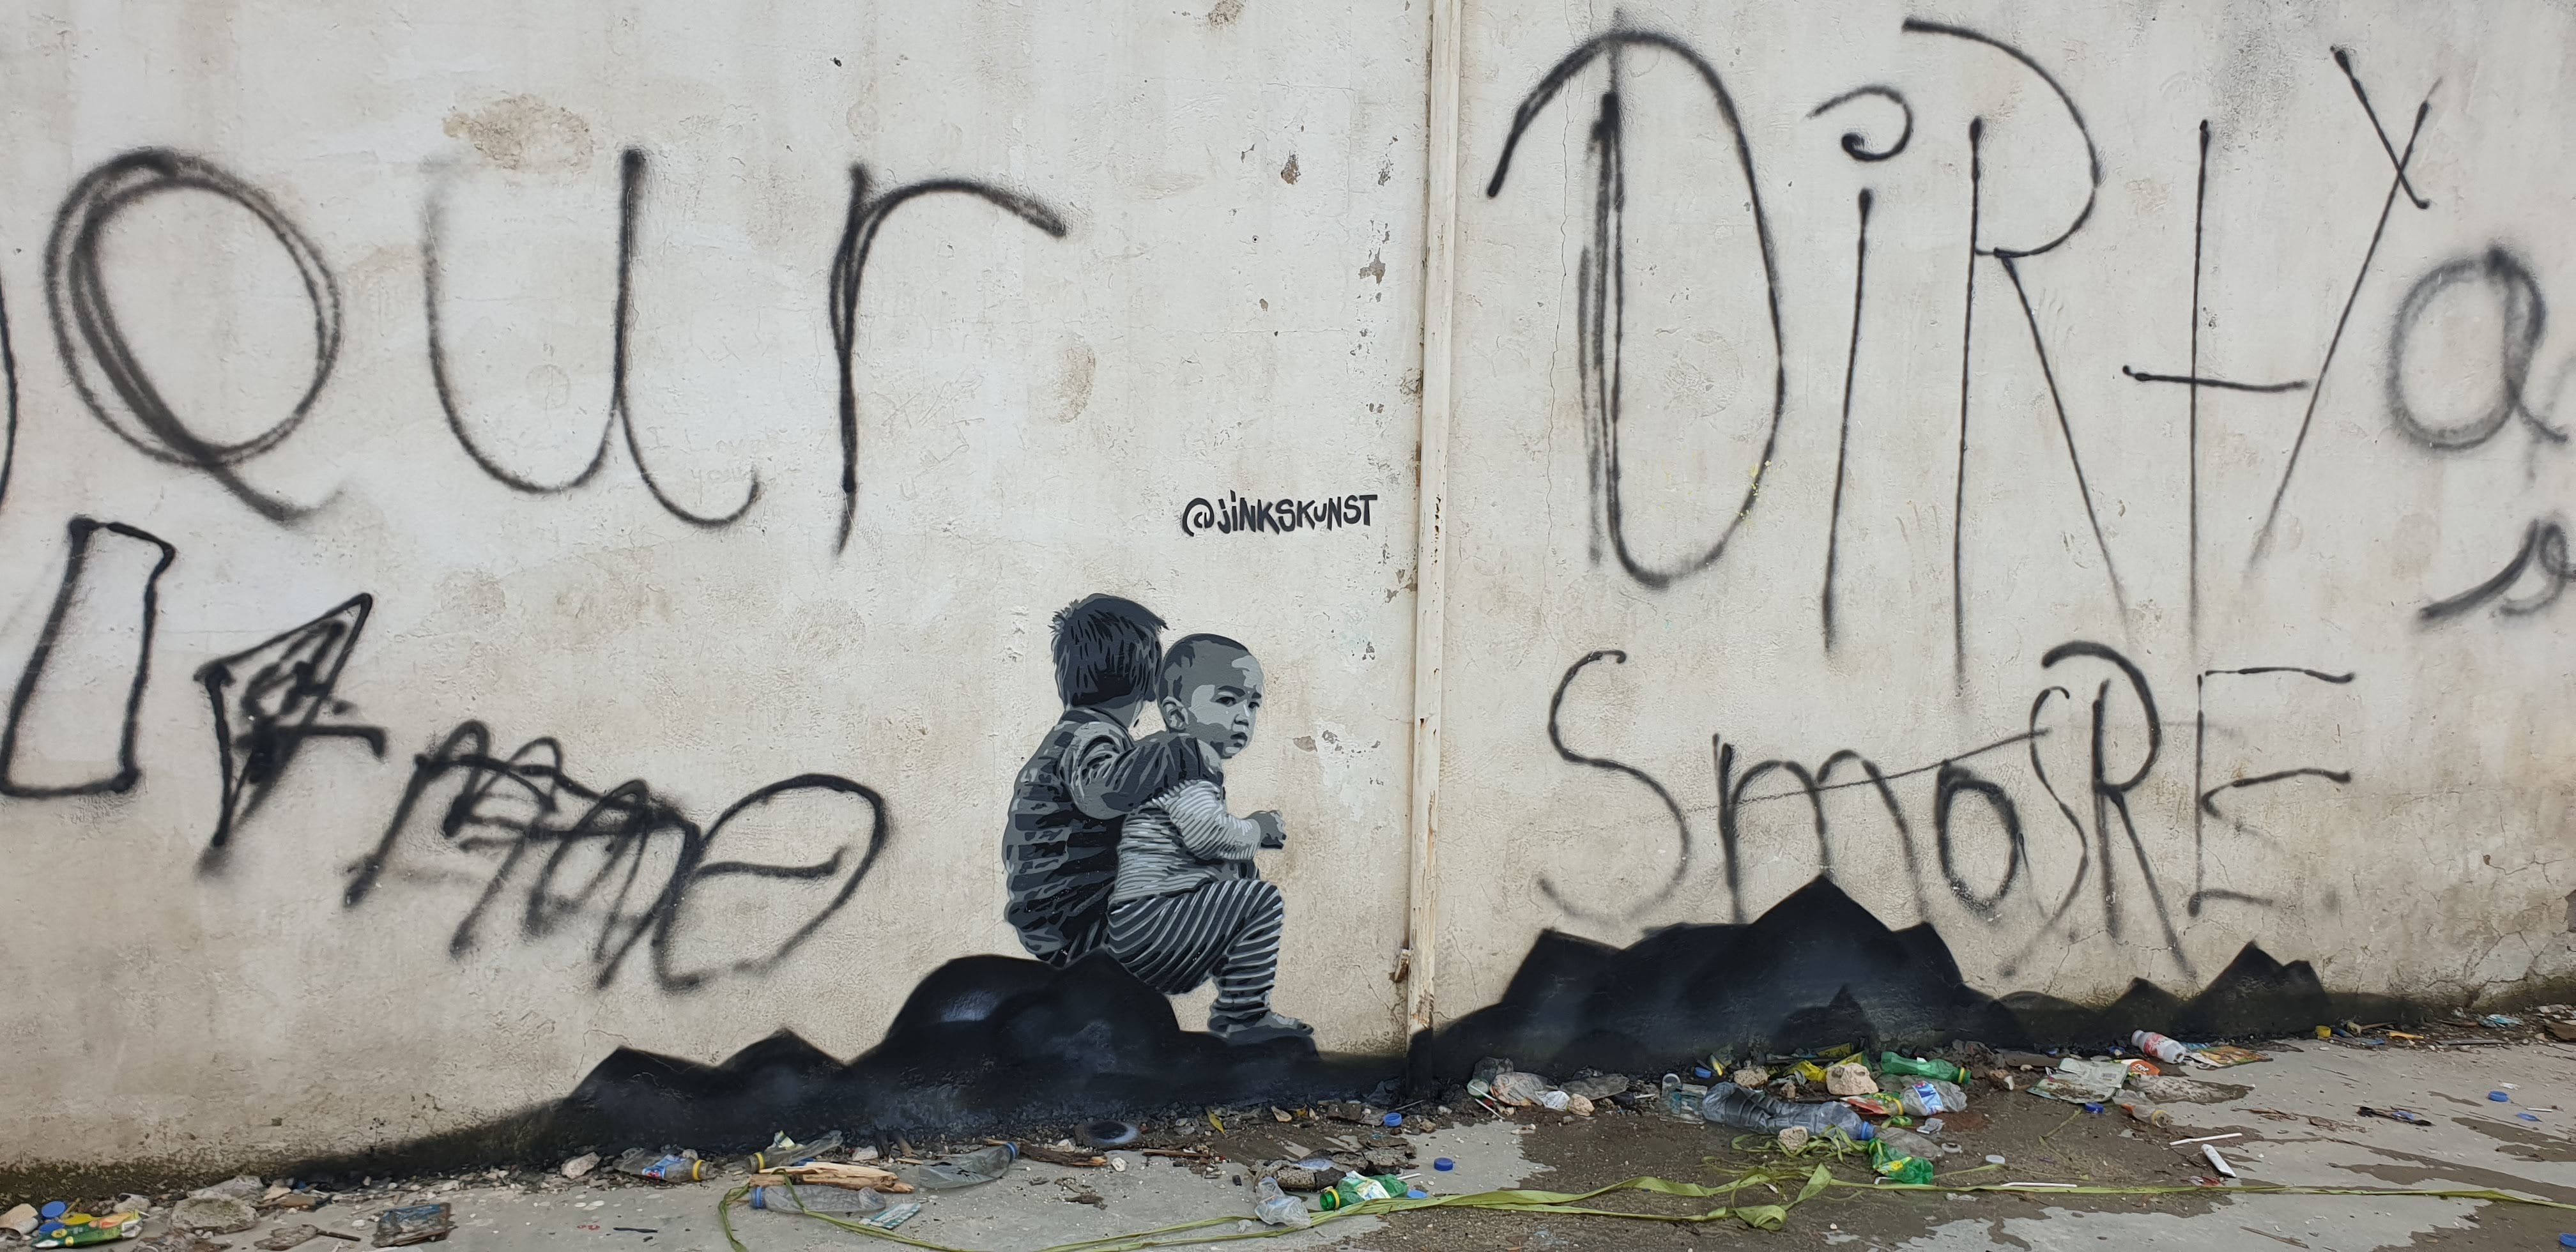 Graffiti 4657 Enfants Syriens de Jinks Kunst capturé par Jinks Kunst à Njar Lebanon